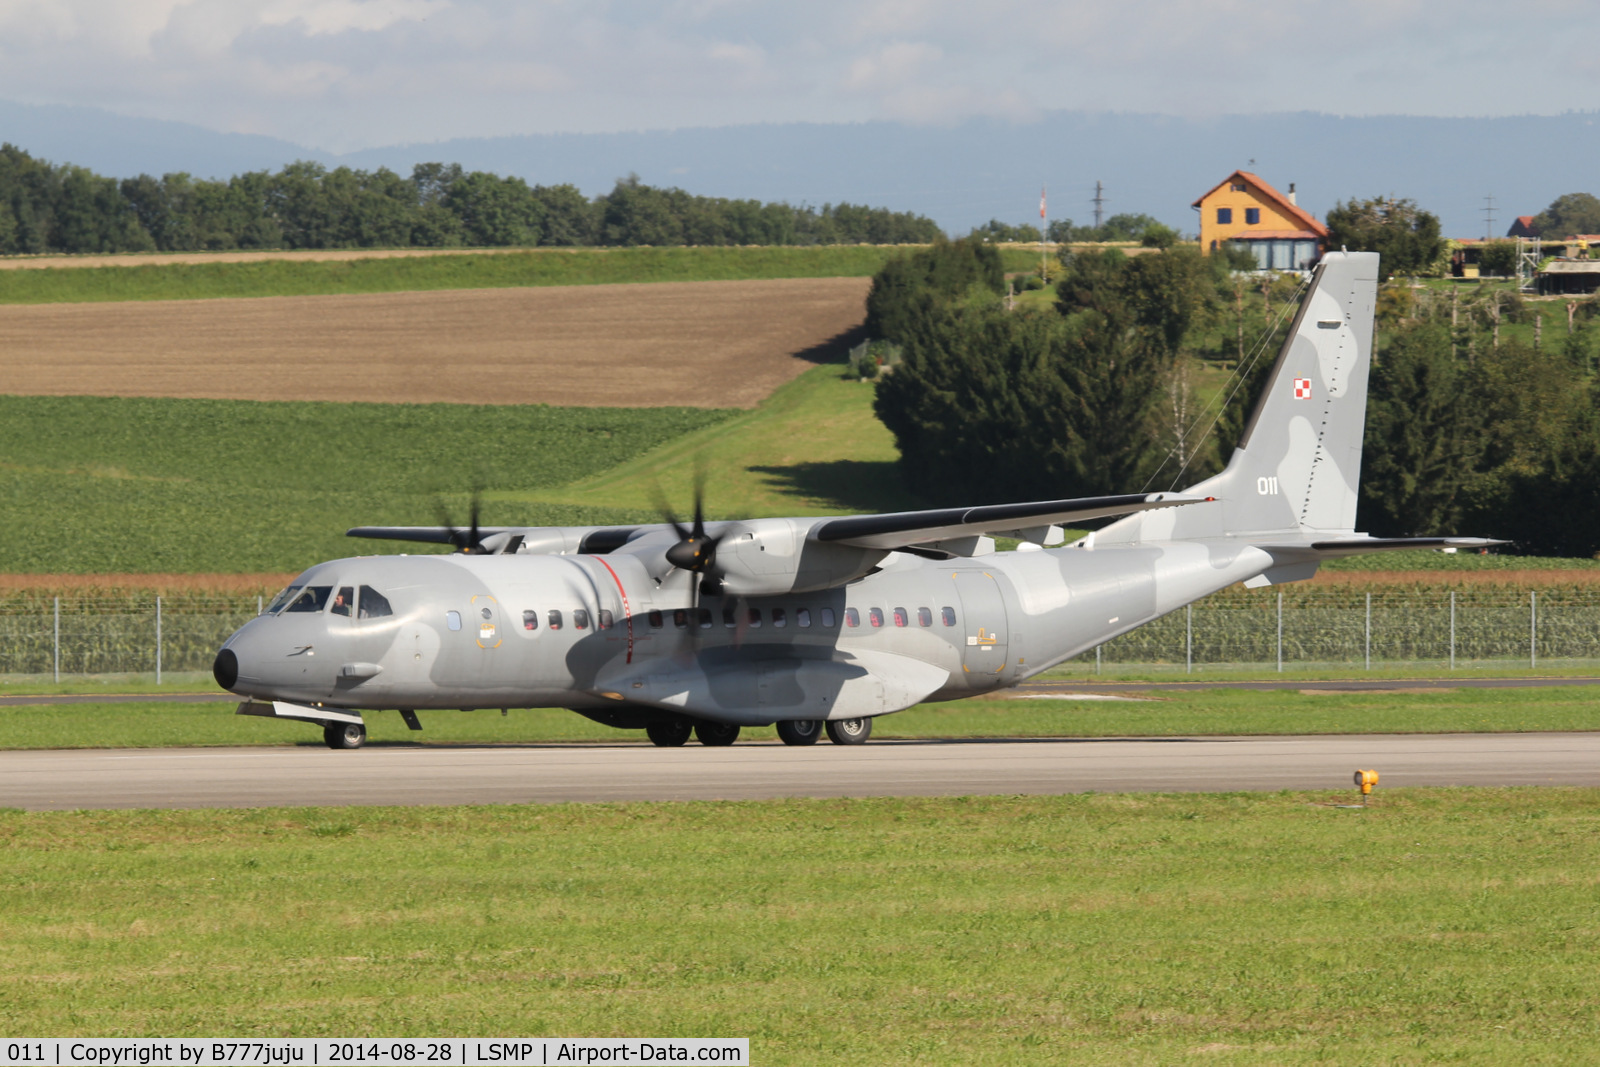 011, 2003 CASA C-295M C/N S-009, with new peint at AIR14